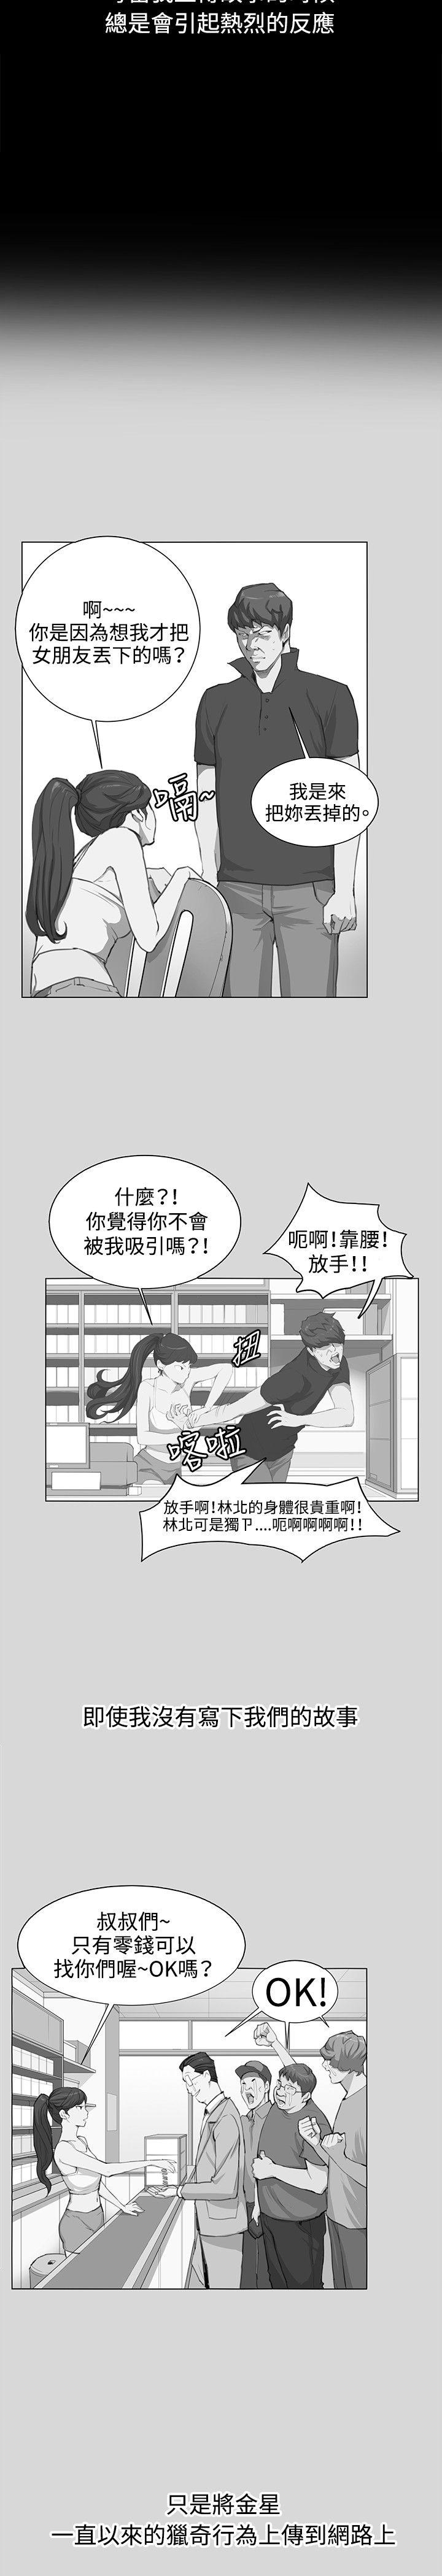 韩国污漫画 深夜便利店 最终话 23